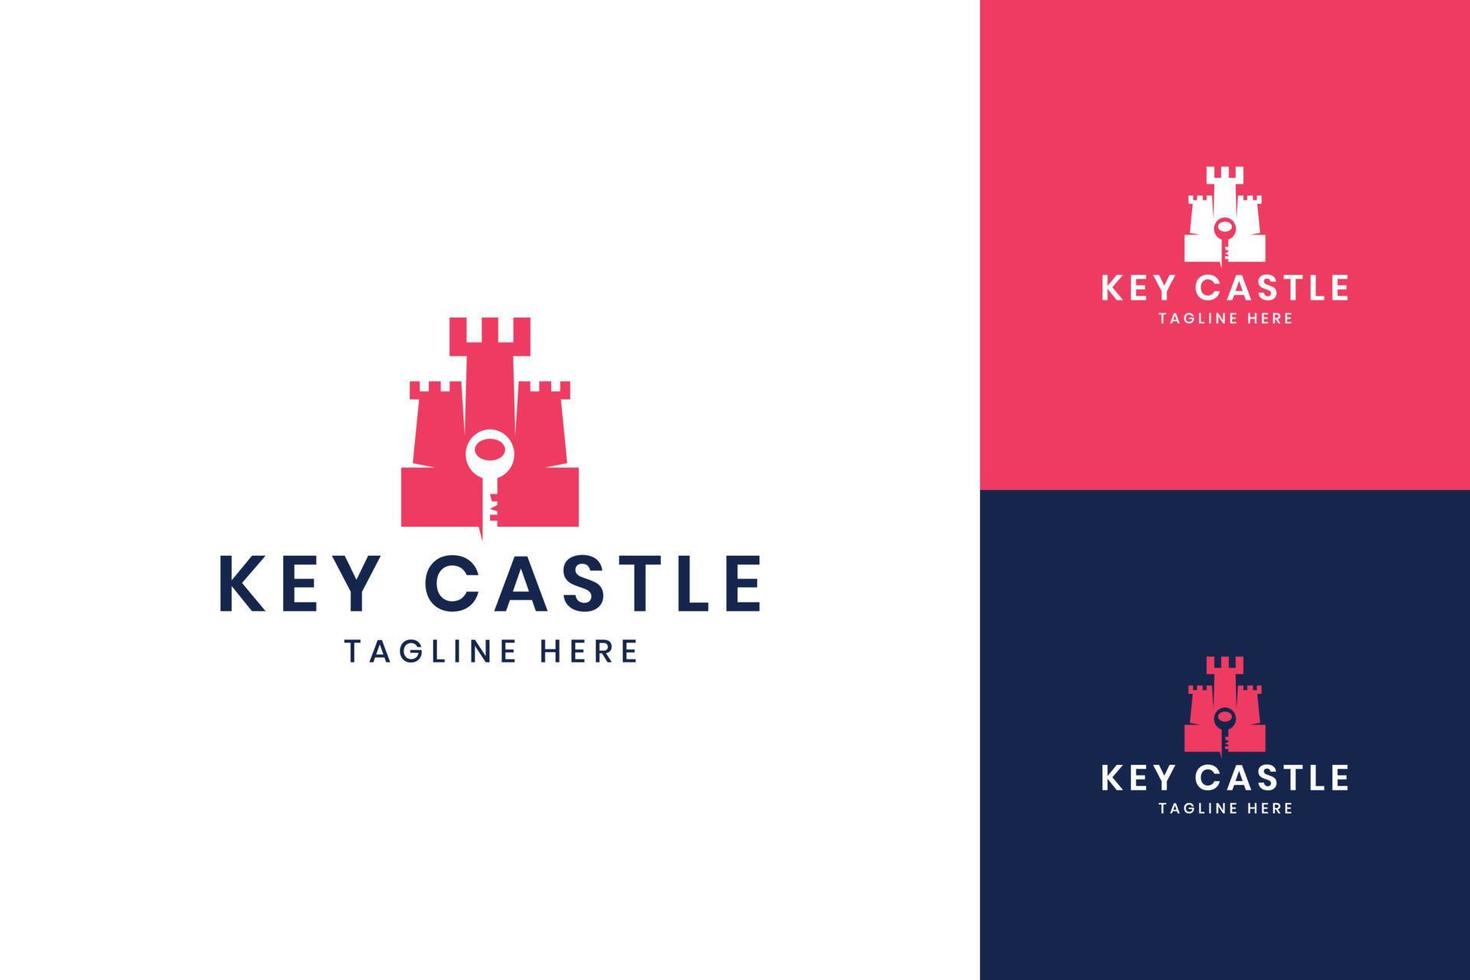 design del logo dello spazio negativo del castello chiave vettore